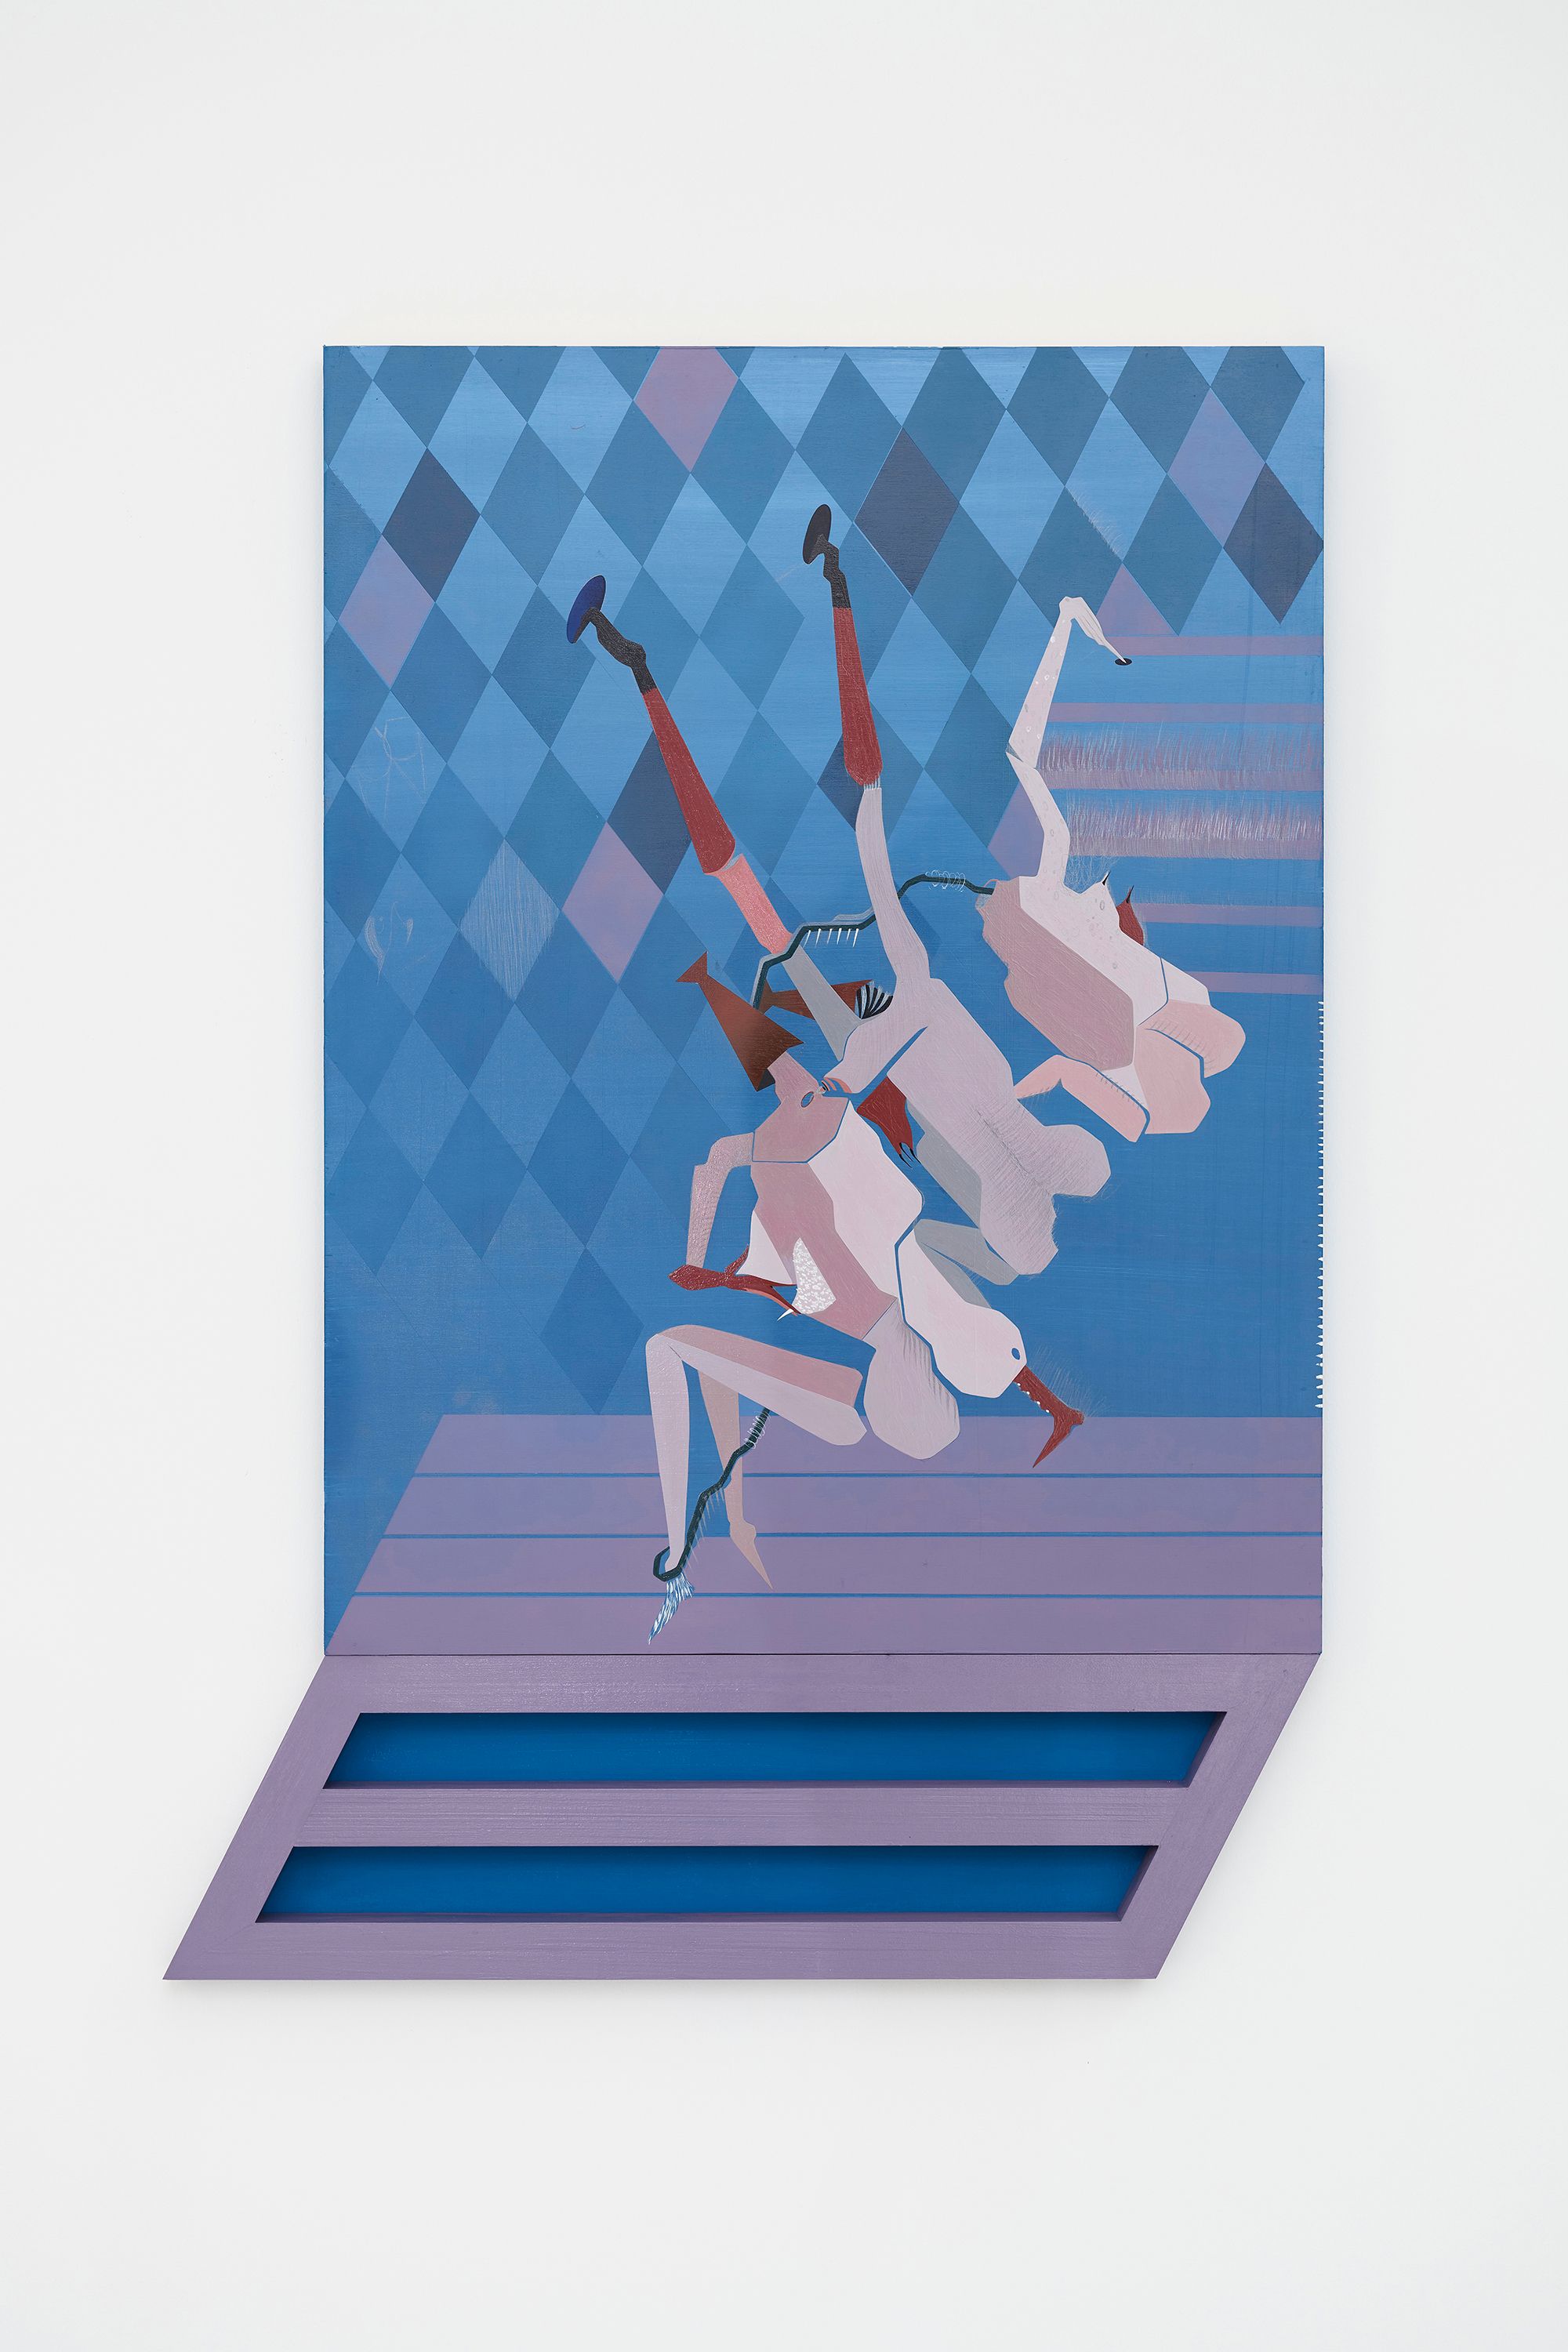 Maryam Hoseini, Capture 5, 2021, Acrylic, ink and pencil on wood panel, 108 ⁠× ⁠75.5 ⁠⁠cm